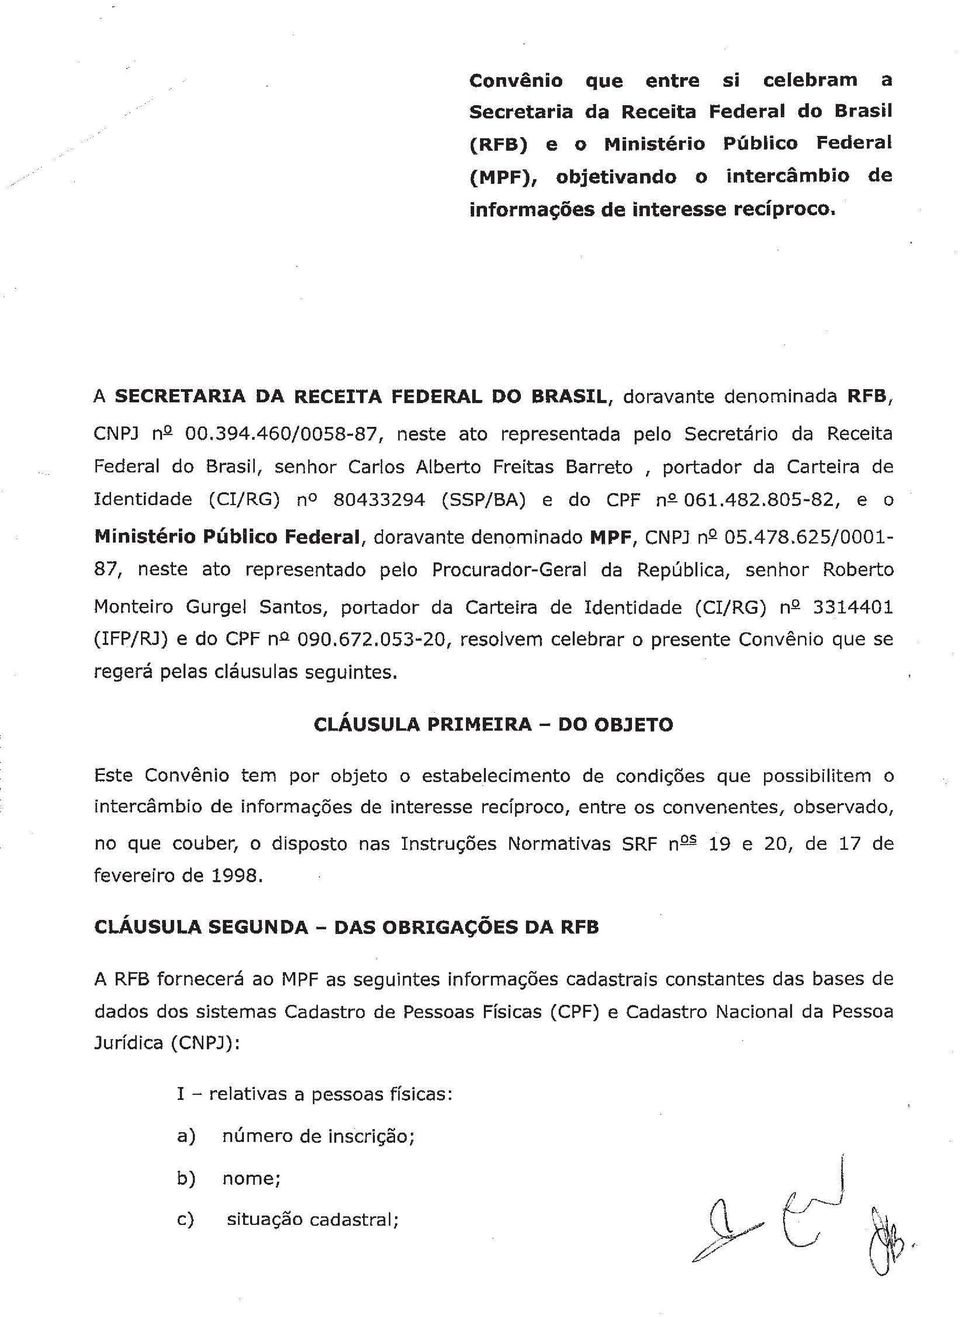 460/0058-87, neste ato representada pelo Secretário da Receita Federal do Brasil, senhor Carlos Alberto Freitas Barreto, portador da Carteira de Identidade (CIjRG) no 80433294 (SSPjBA) e do CPF n-º-